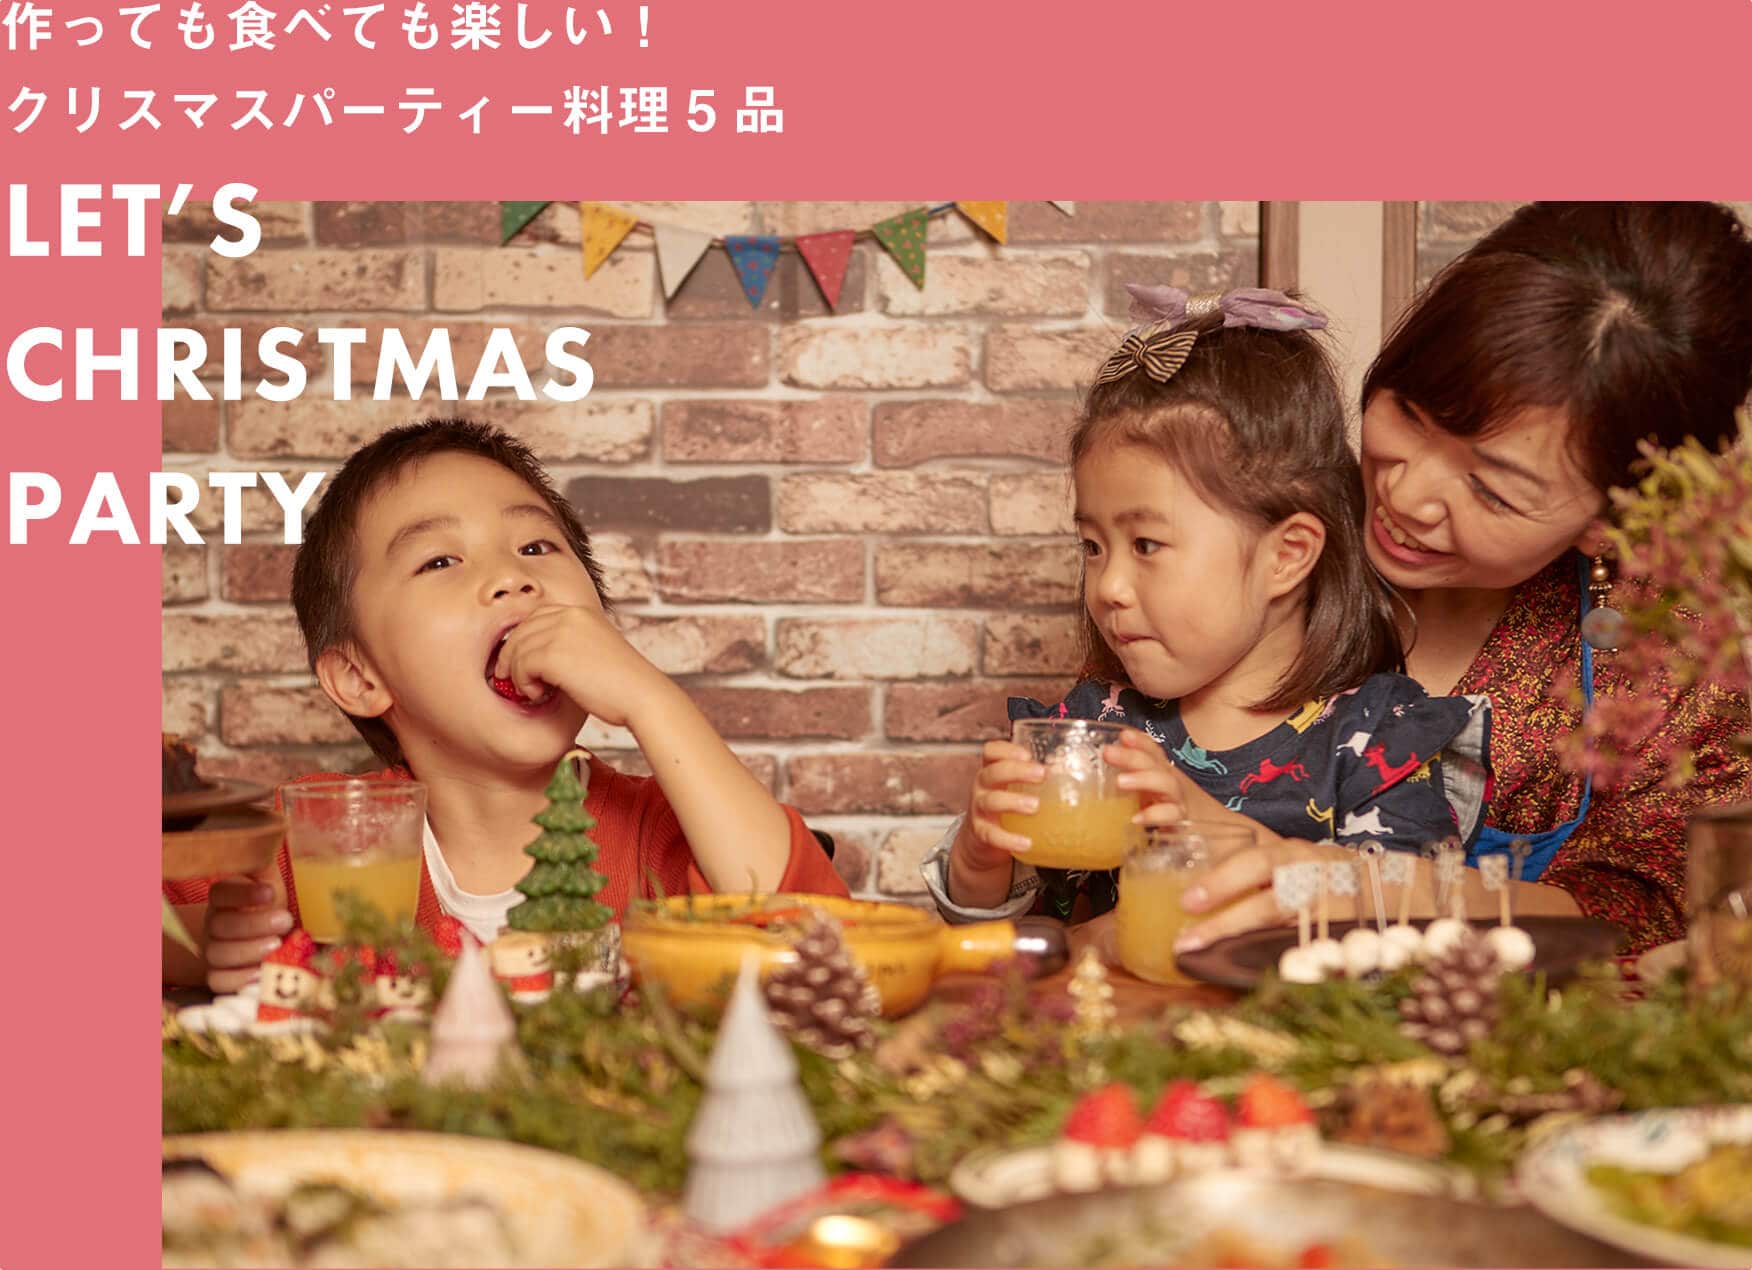 親子で作るクリスマスパーティー料理のレシピ 料理研究家 國塩亜矢子さん監修